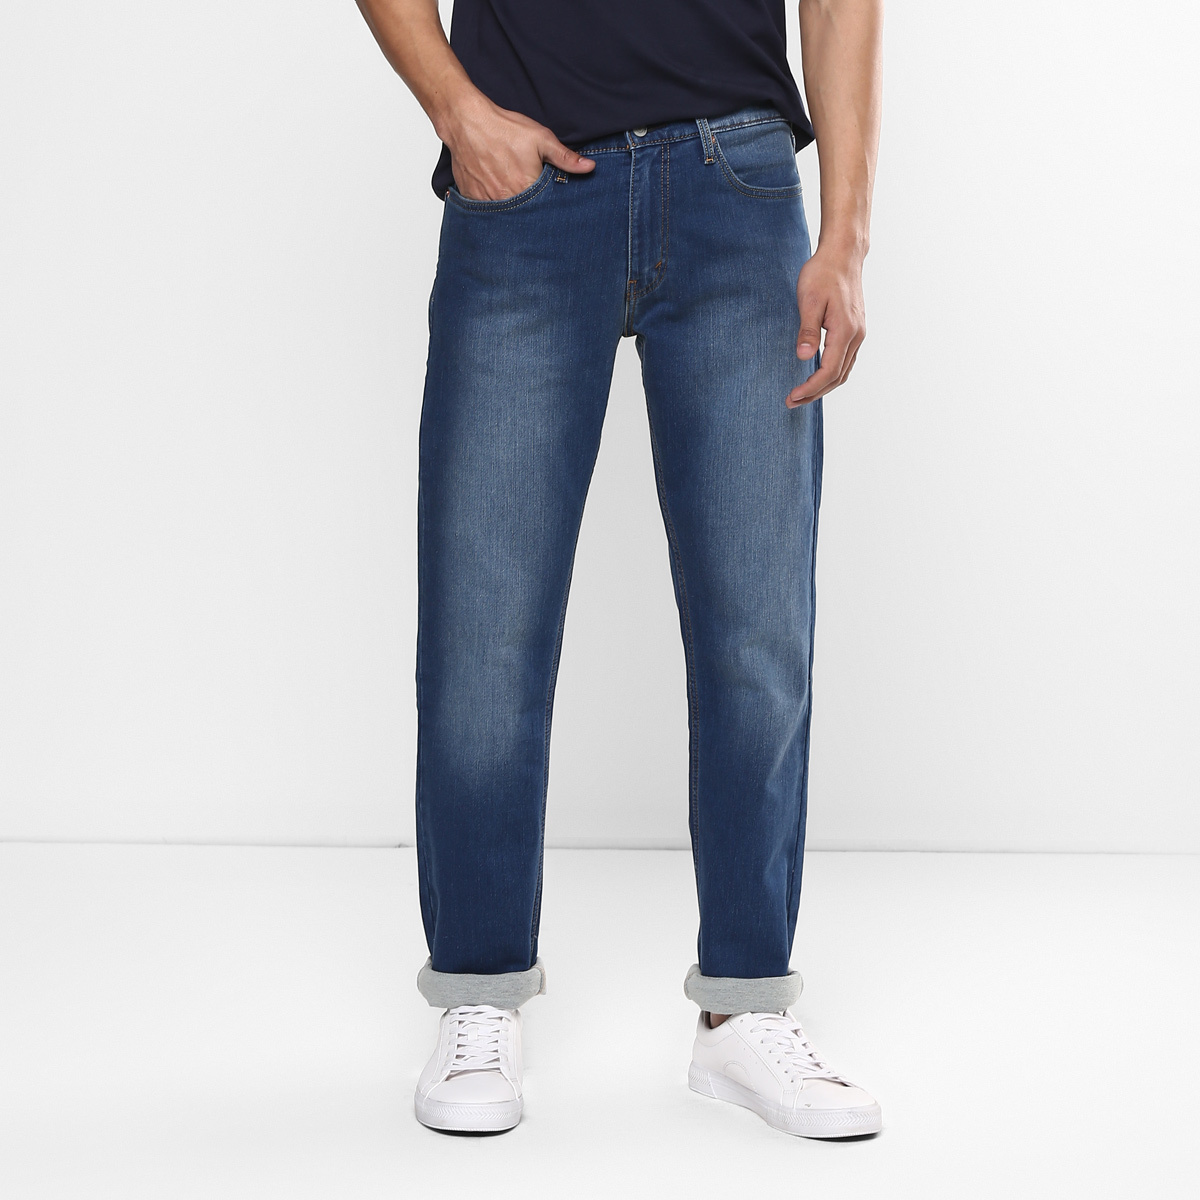 LEVIS MEN Single Length Jeans 23677-0180 Blue 34